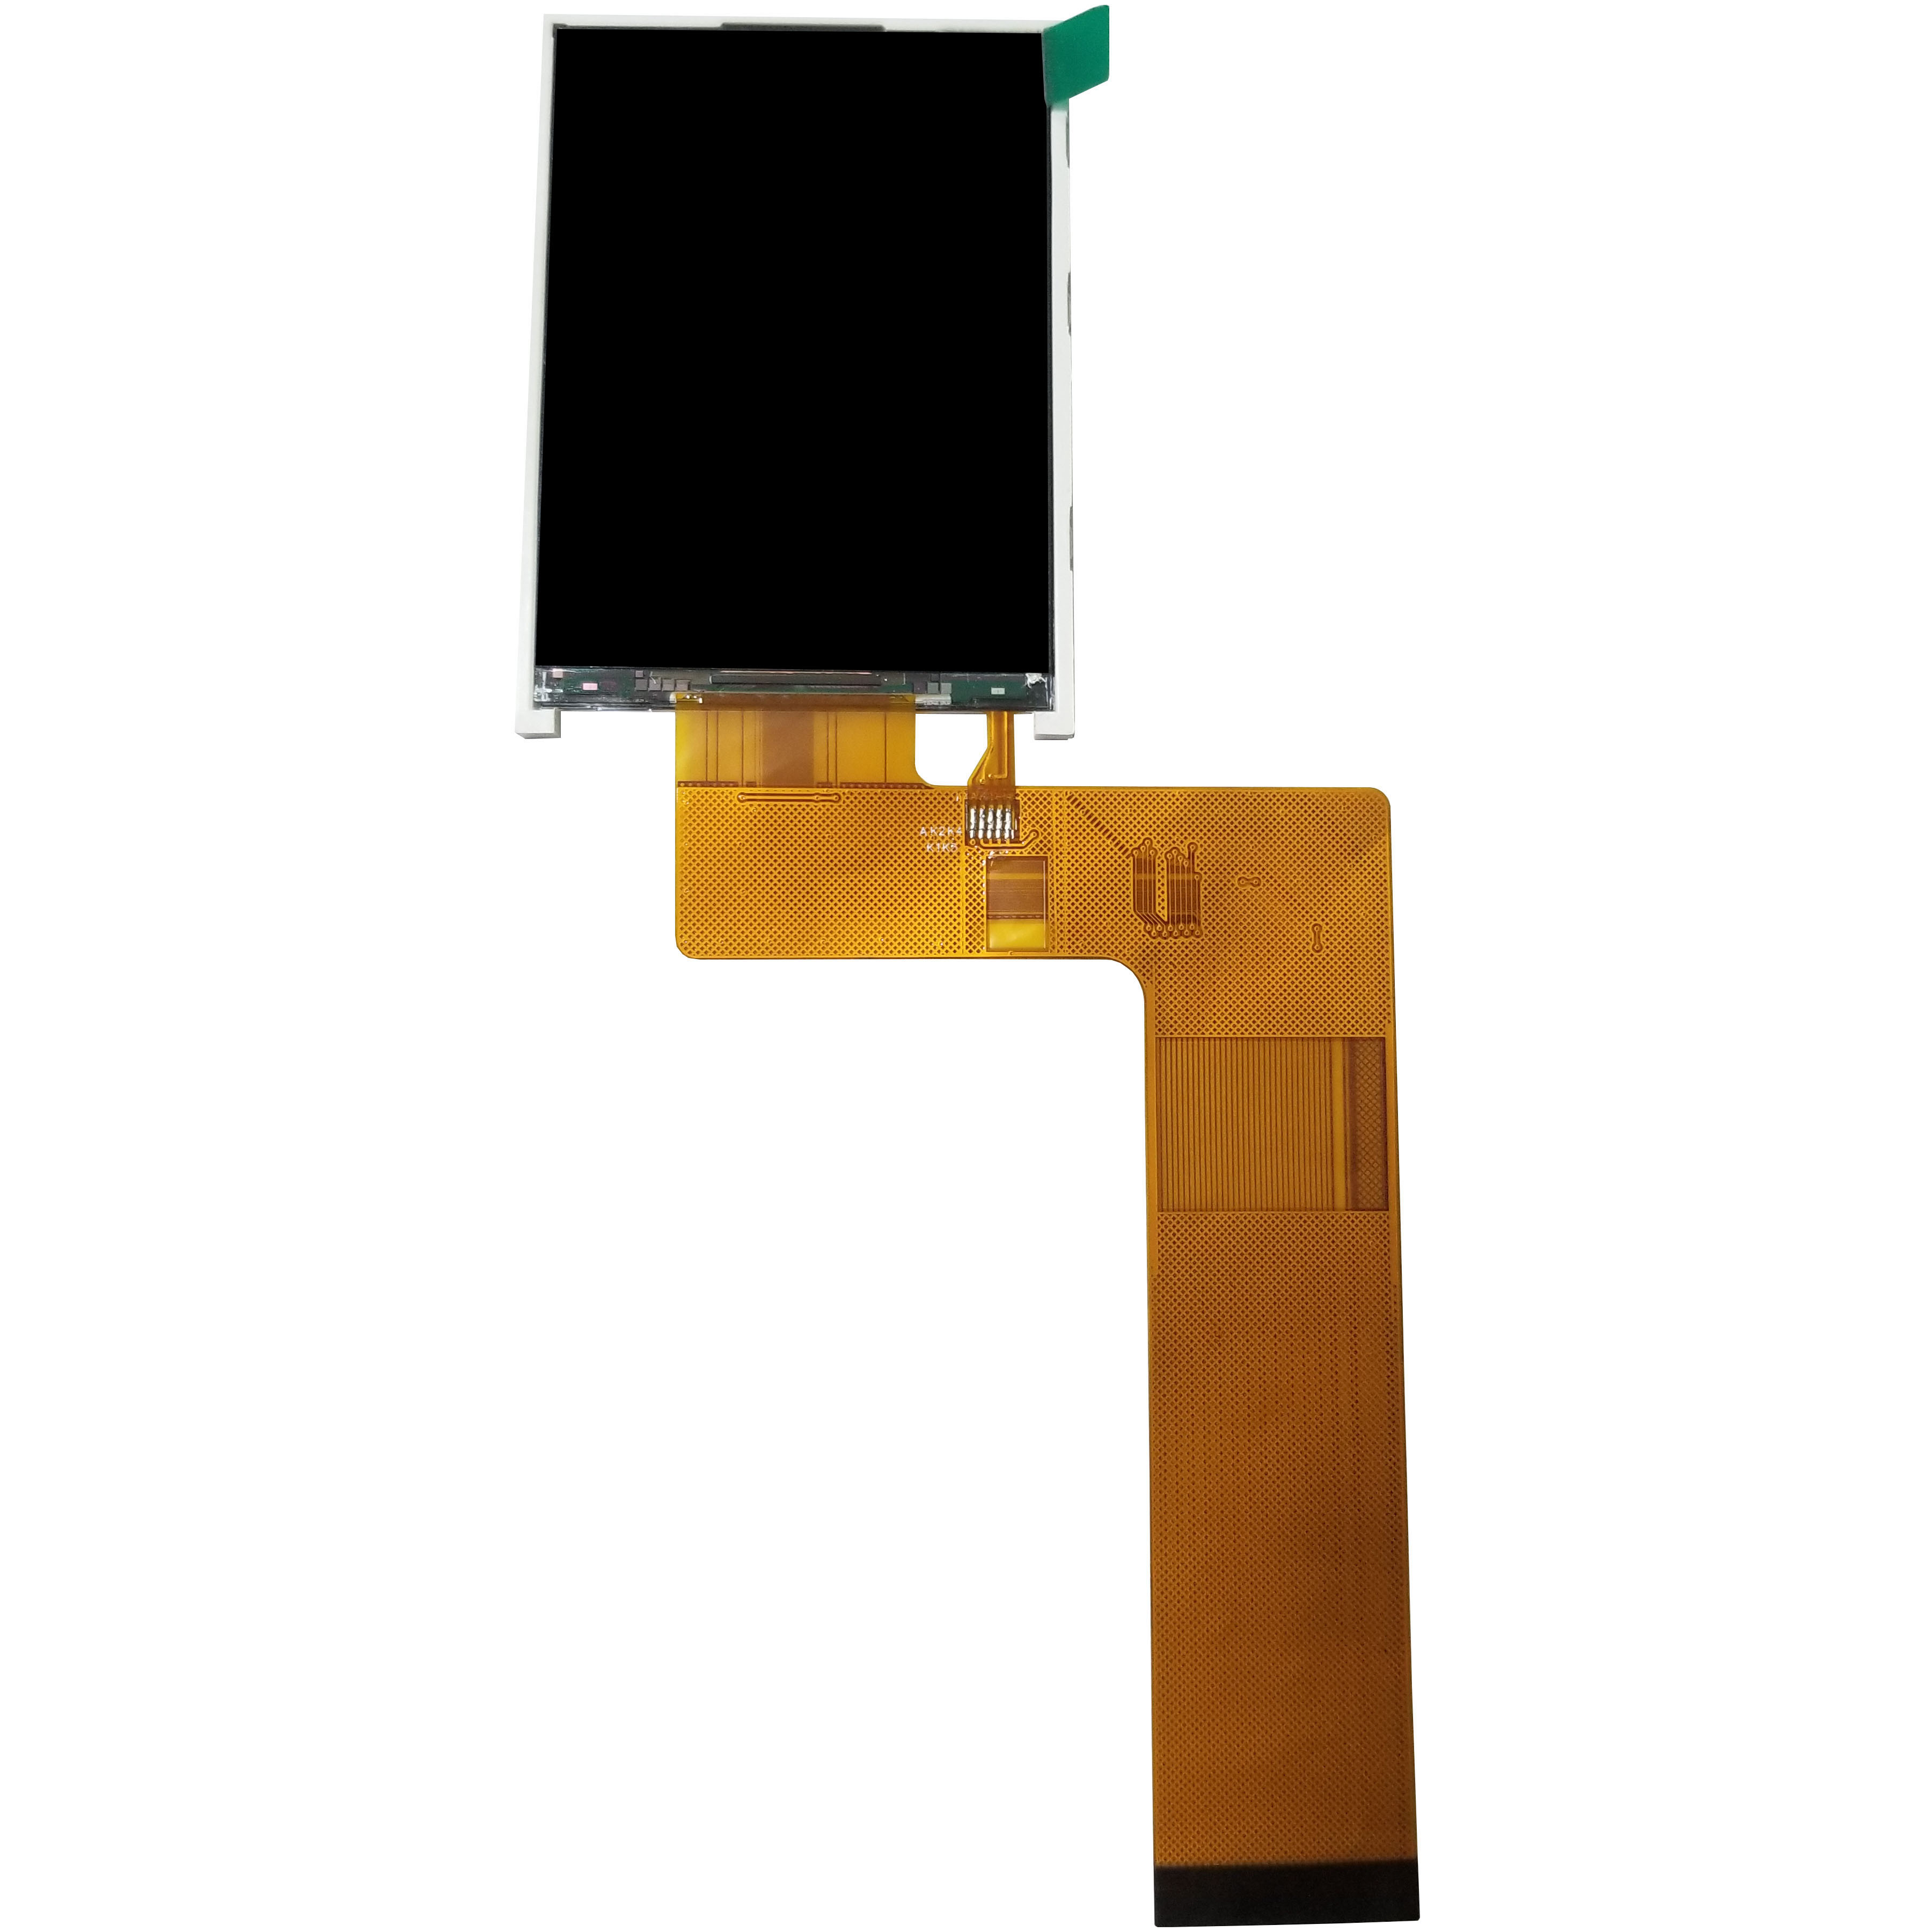 ST7789V affichages de TFT LCD de 2,8 pouces